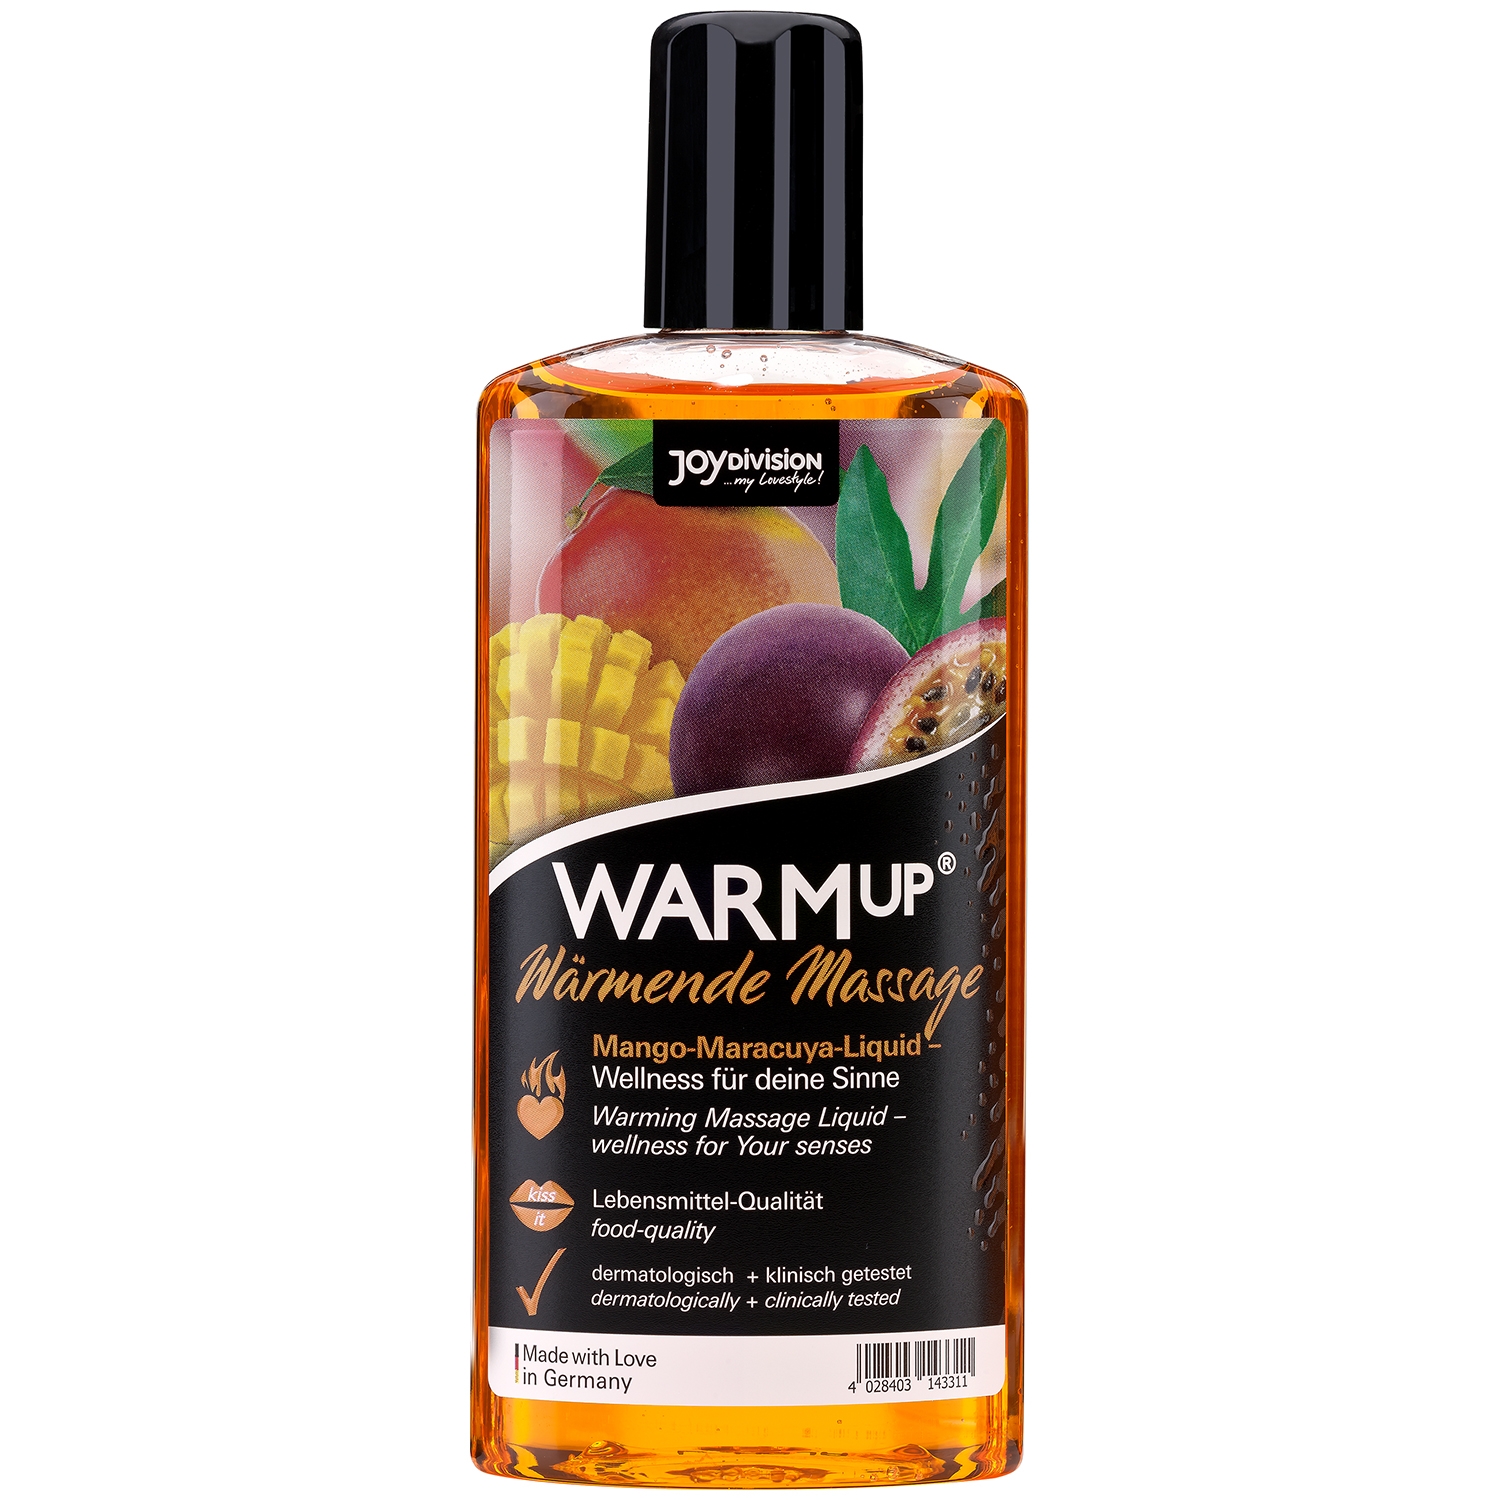 6: Joydivision WARMup Varmende Massageolie med Smag 150 ml - Orange